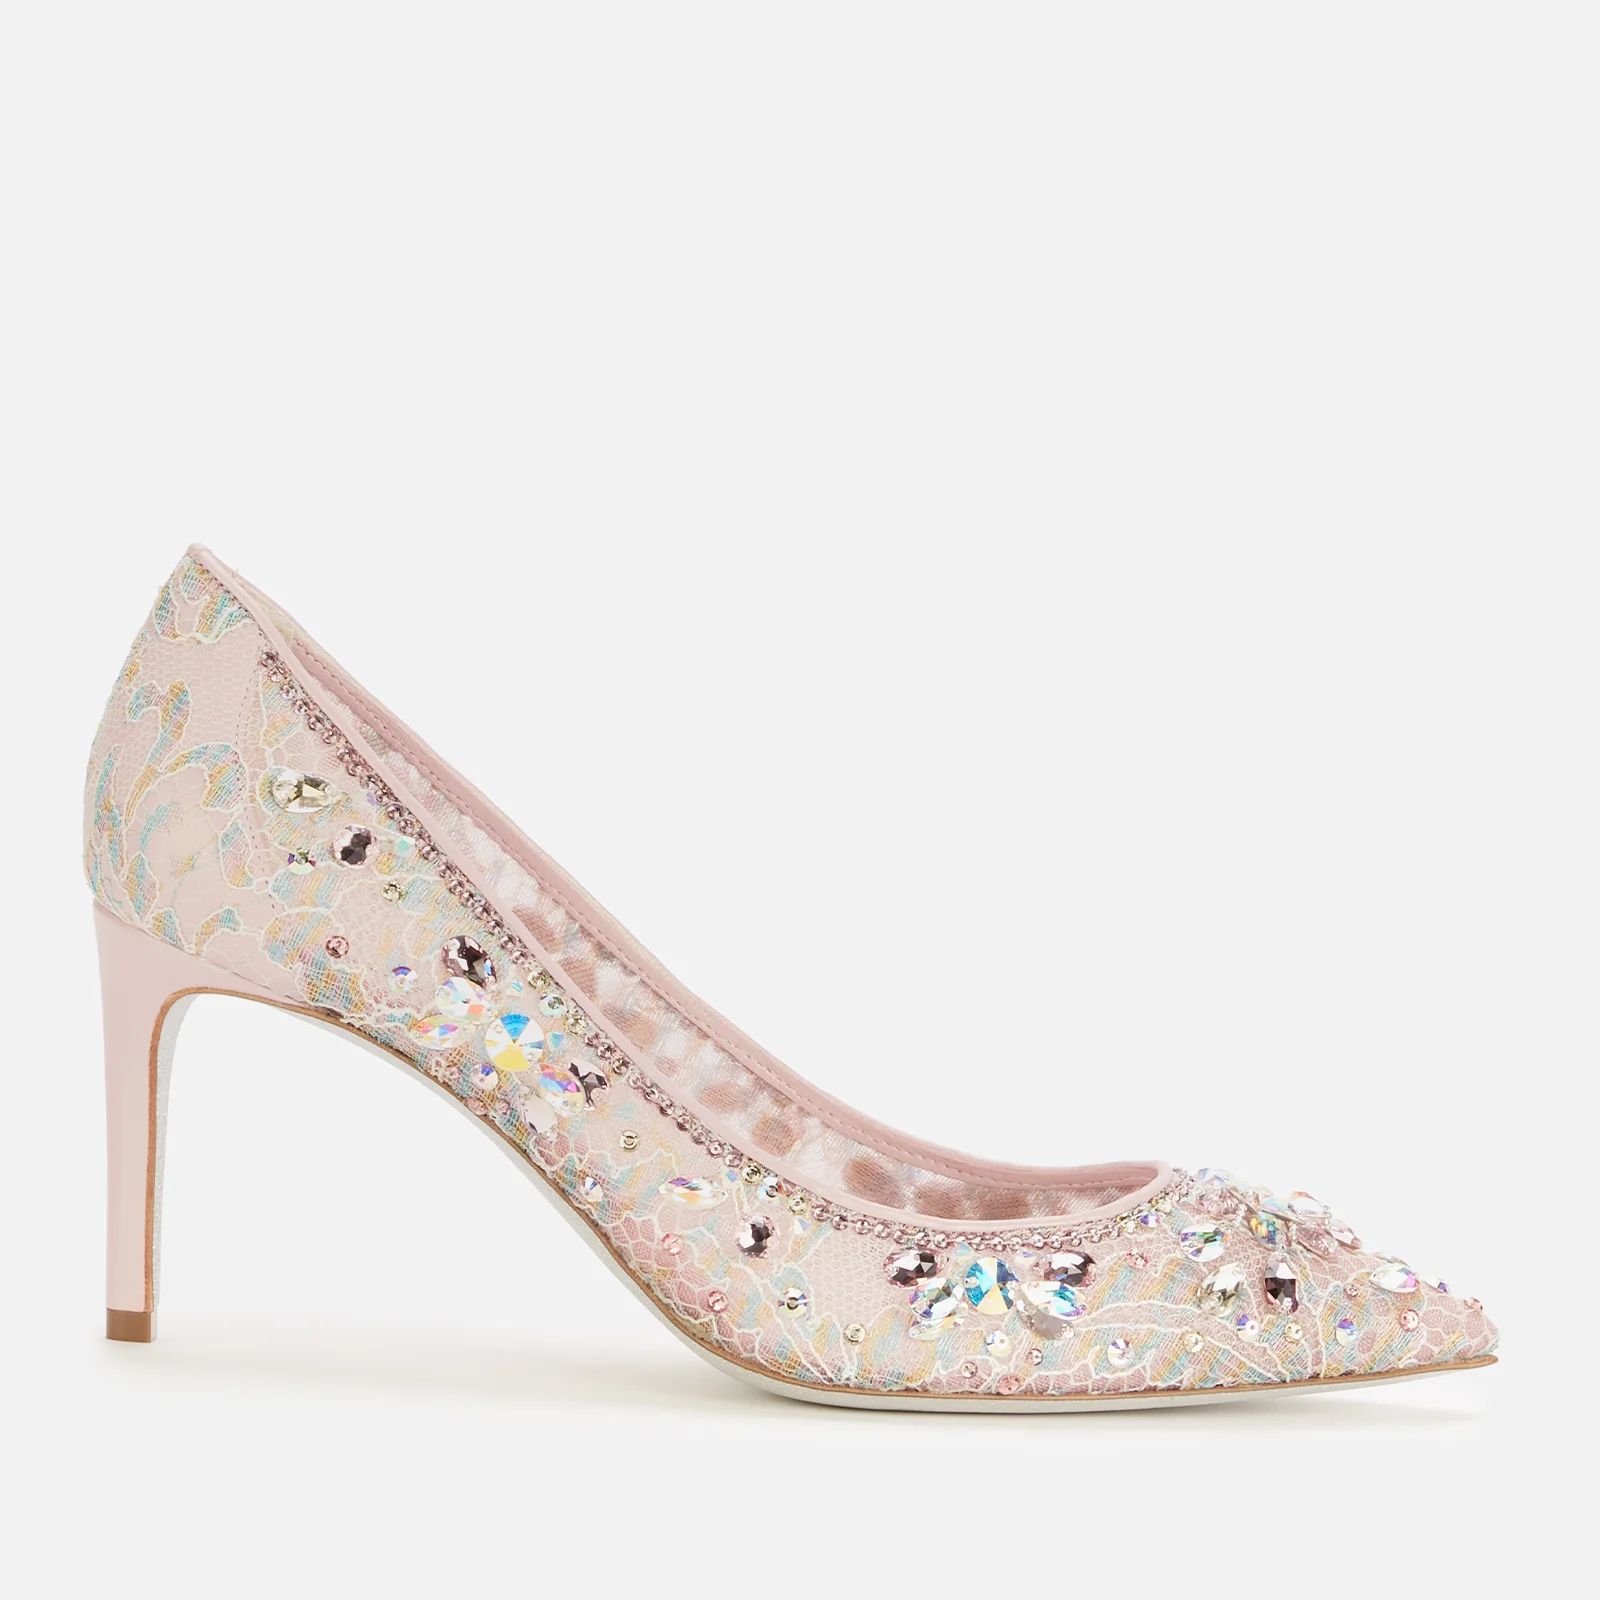 René Caovilla Women's Court Shoes - Lilac Image 1